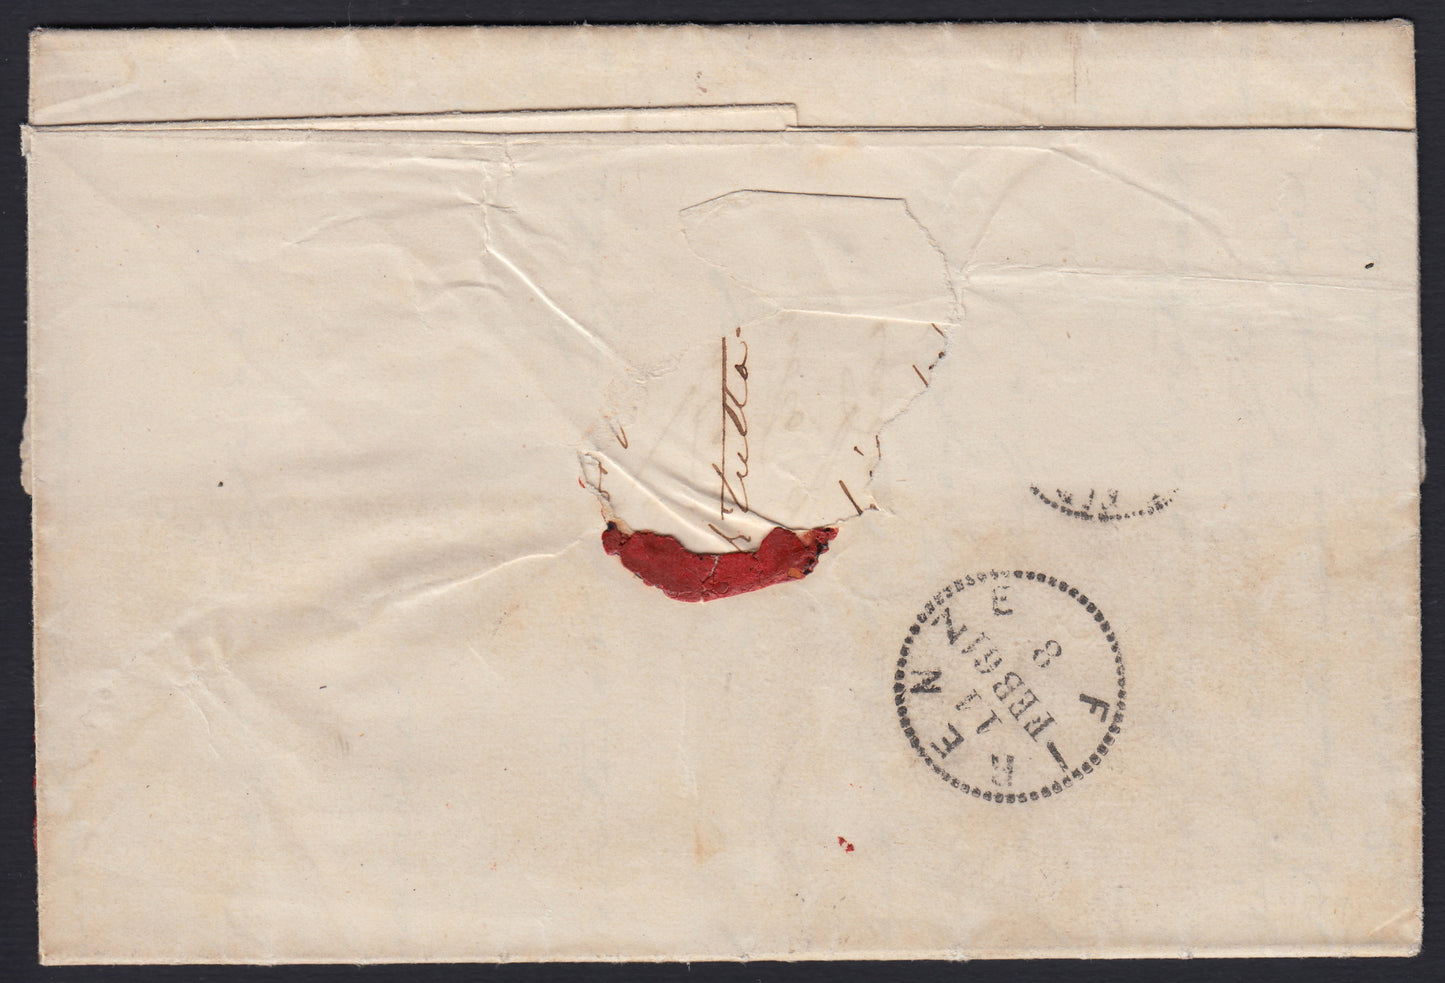 166 - 1861 - Lettera spedita da Pisa per Firenze 11/2/61 annullata con il muto a rombi di Prato in transito e rispedita poi a Pisa. (14Bd).